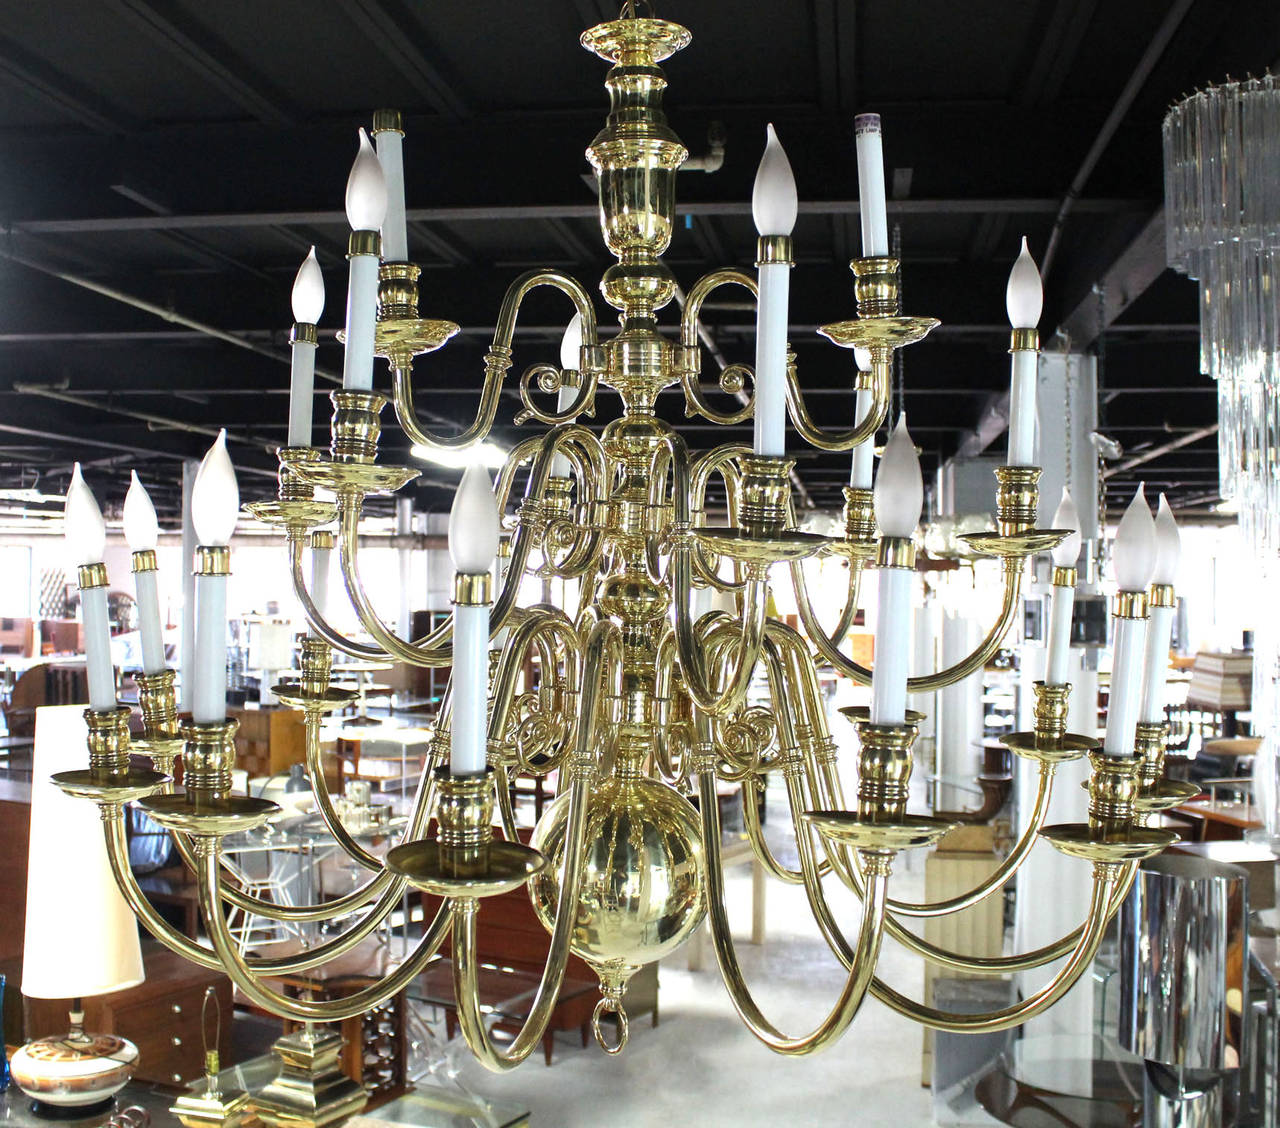 Nice large vintage candelabra chandelier (40x40")